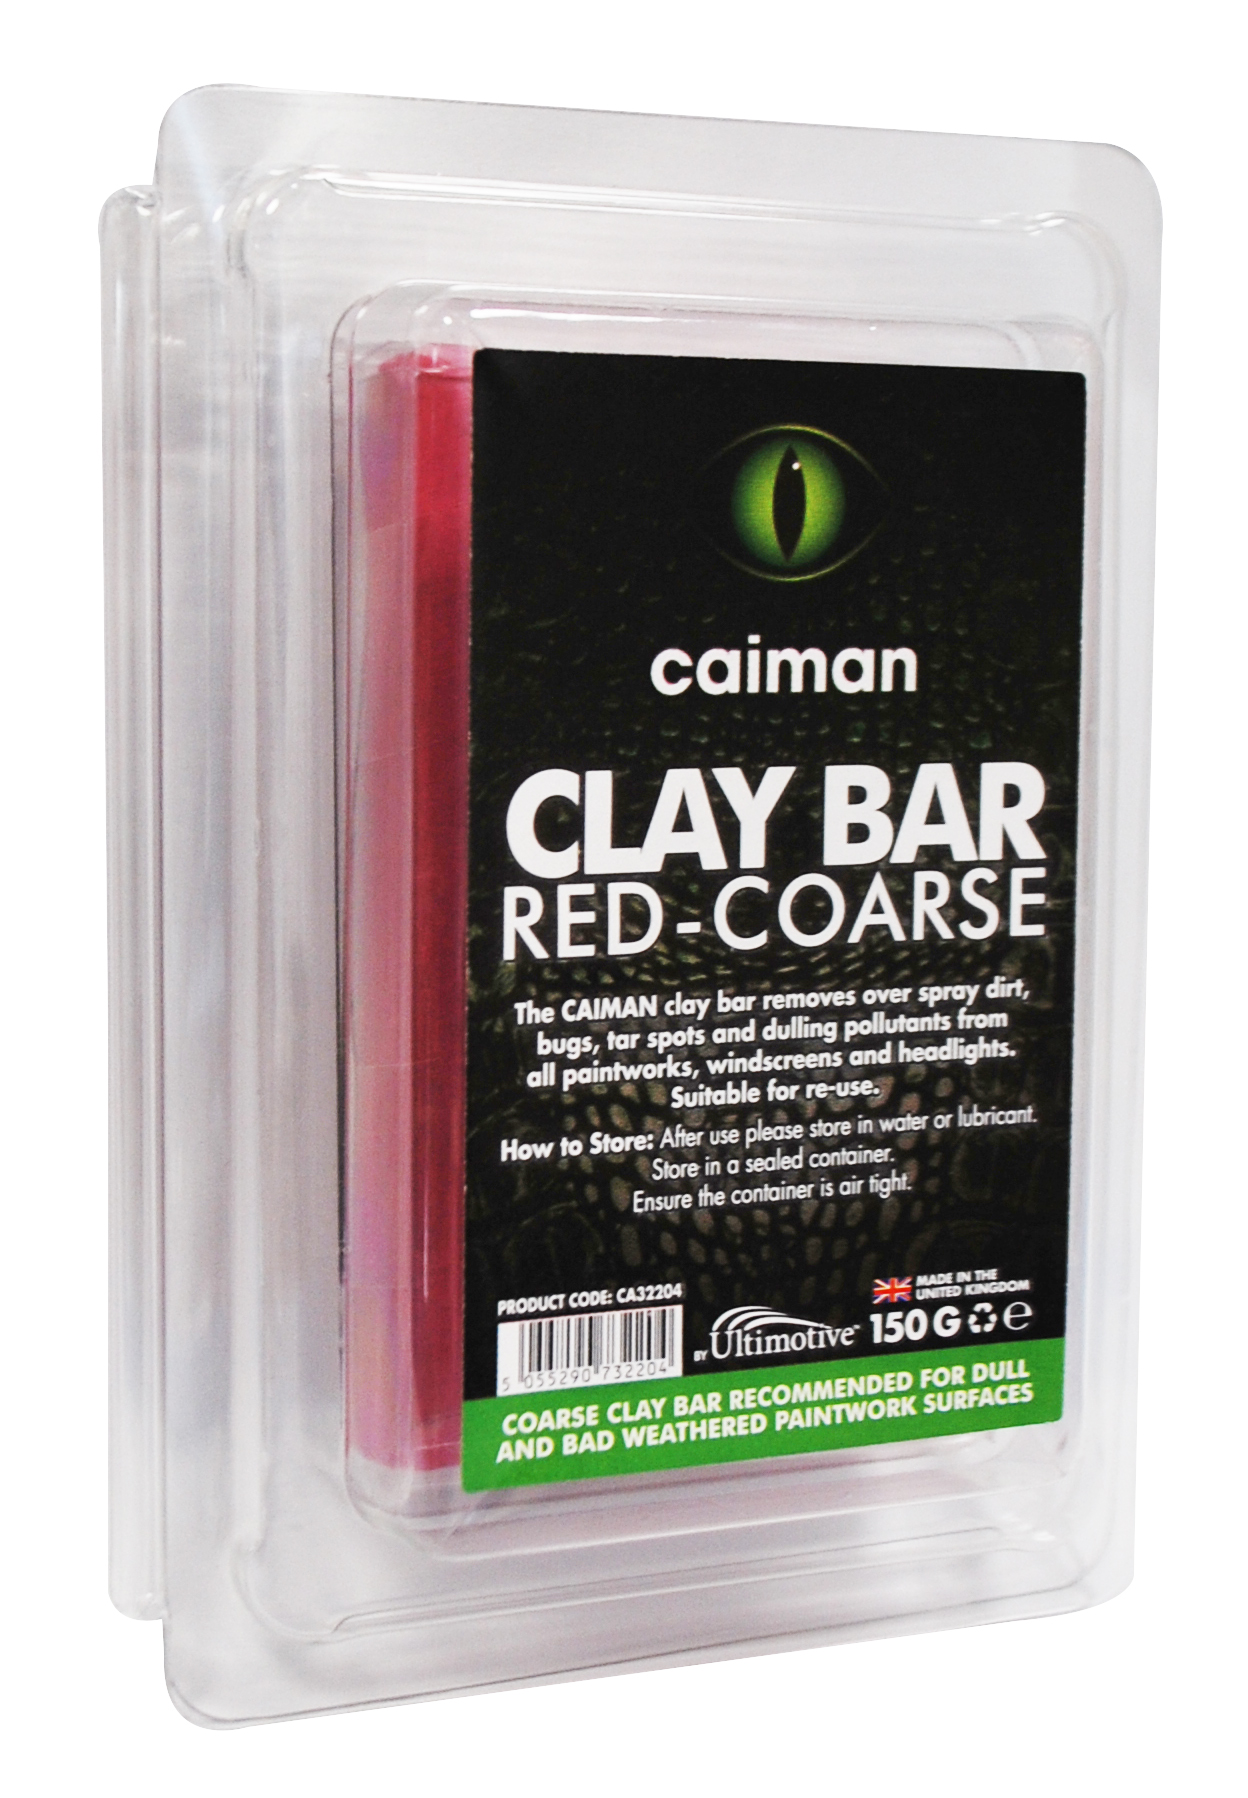 CAIMAN CLAY BAR RED-COARSE 150G